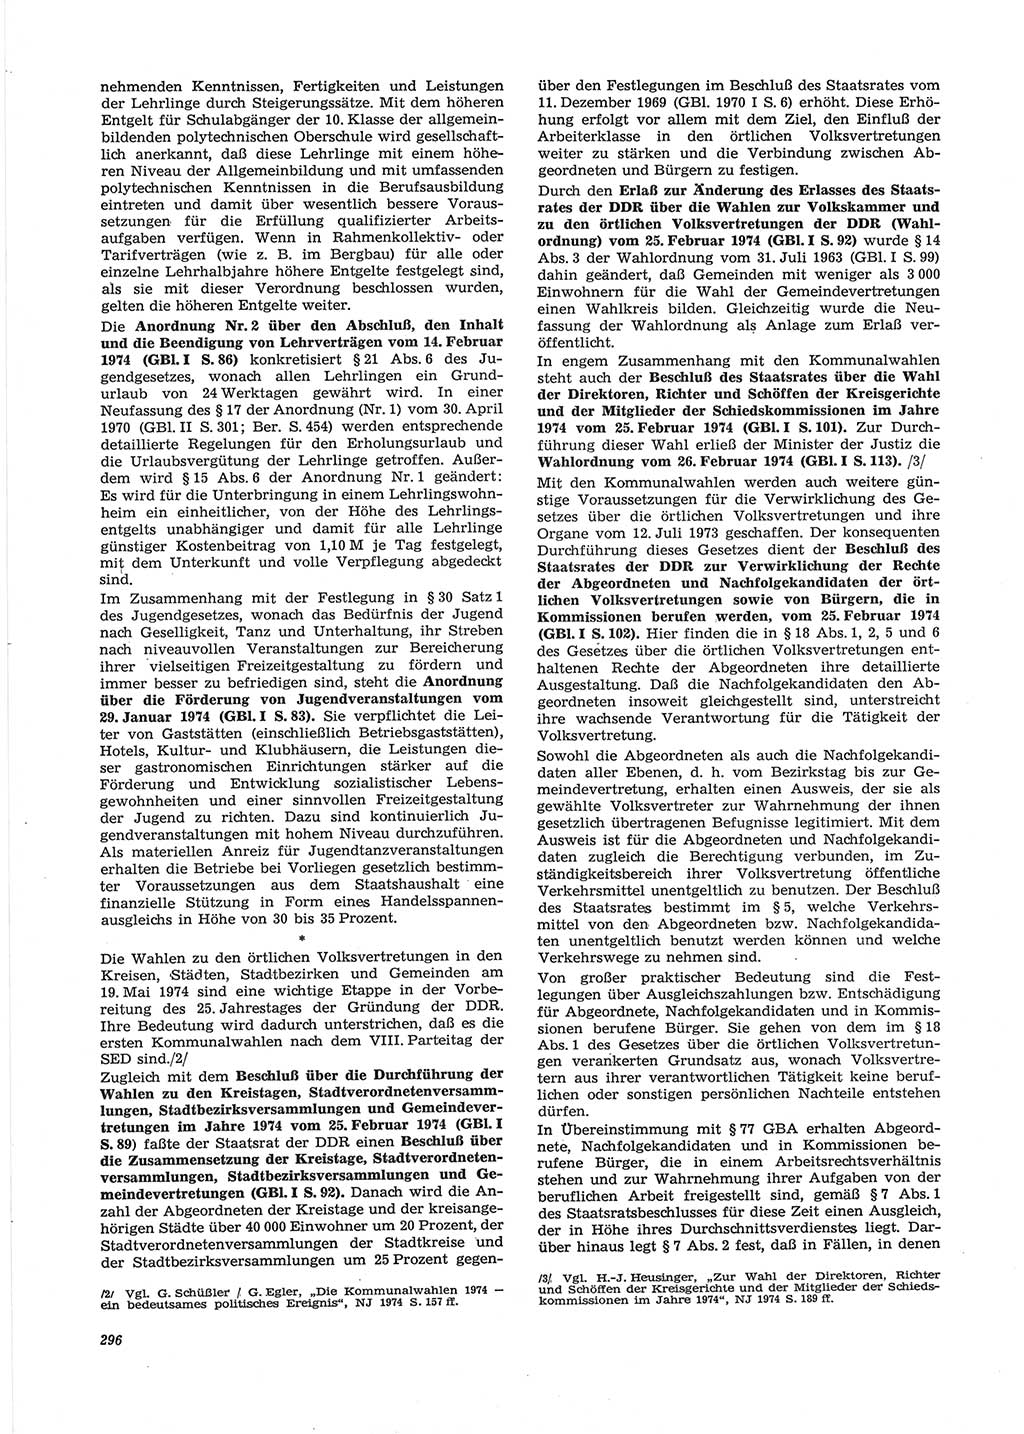 Neue Justiz (NJ), Zeitschrift für Recht und Rechtswissenschaft [Deutsche Demokratische Republik (DDR)], 28. Jahrgang 1974, Seite 296 (NJ DDR 1974, S. 296)